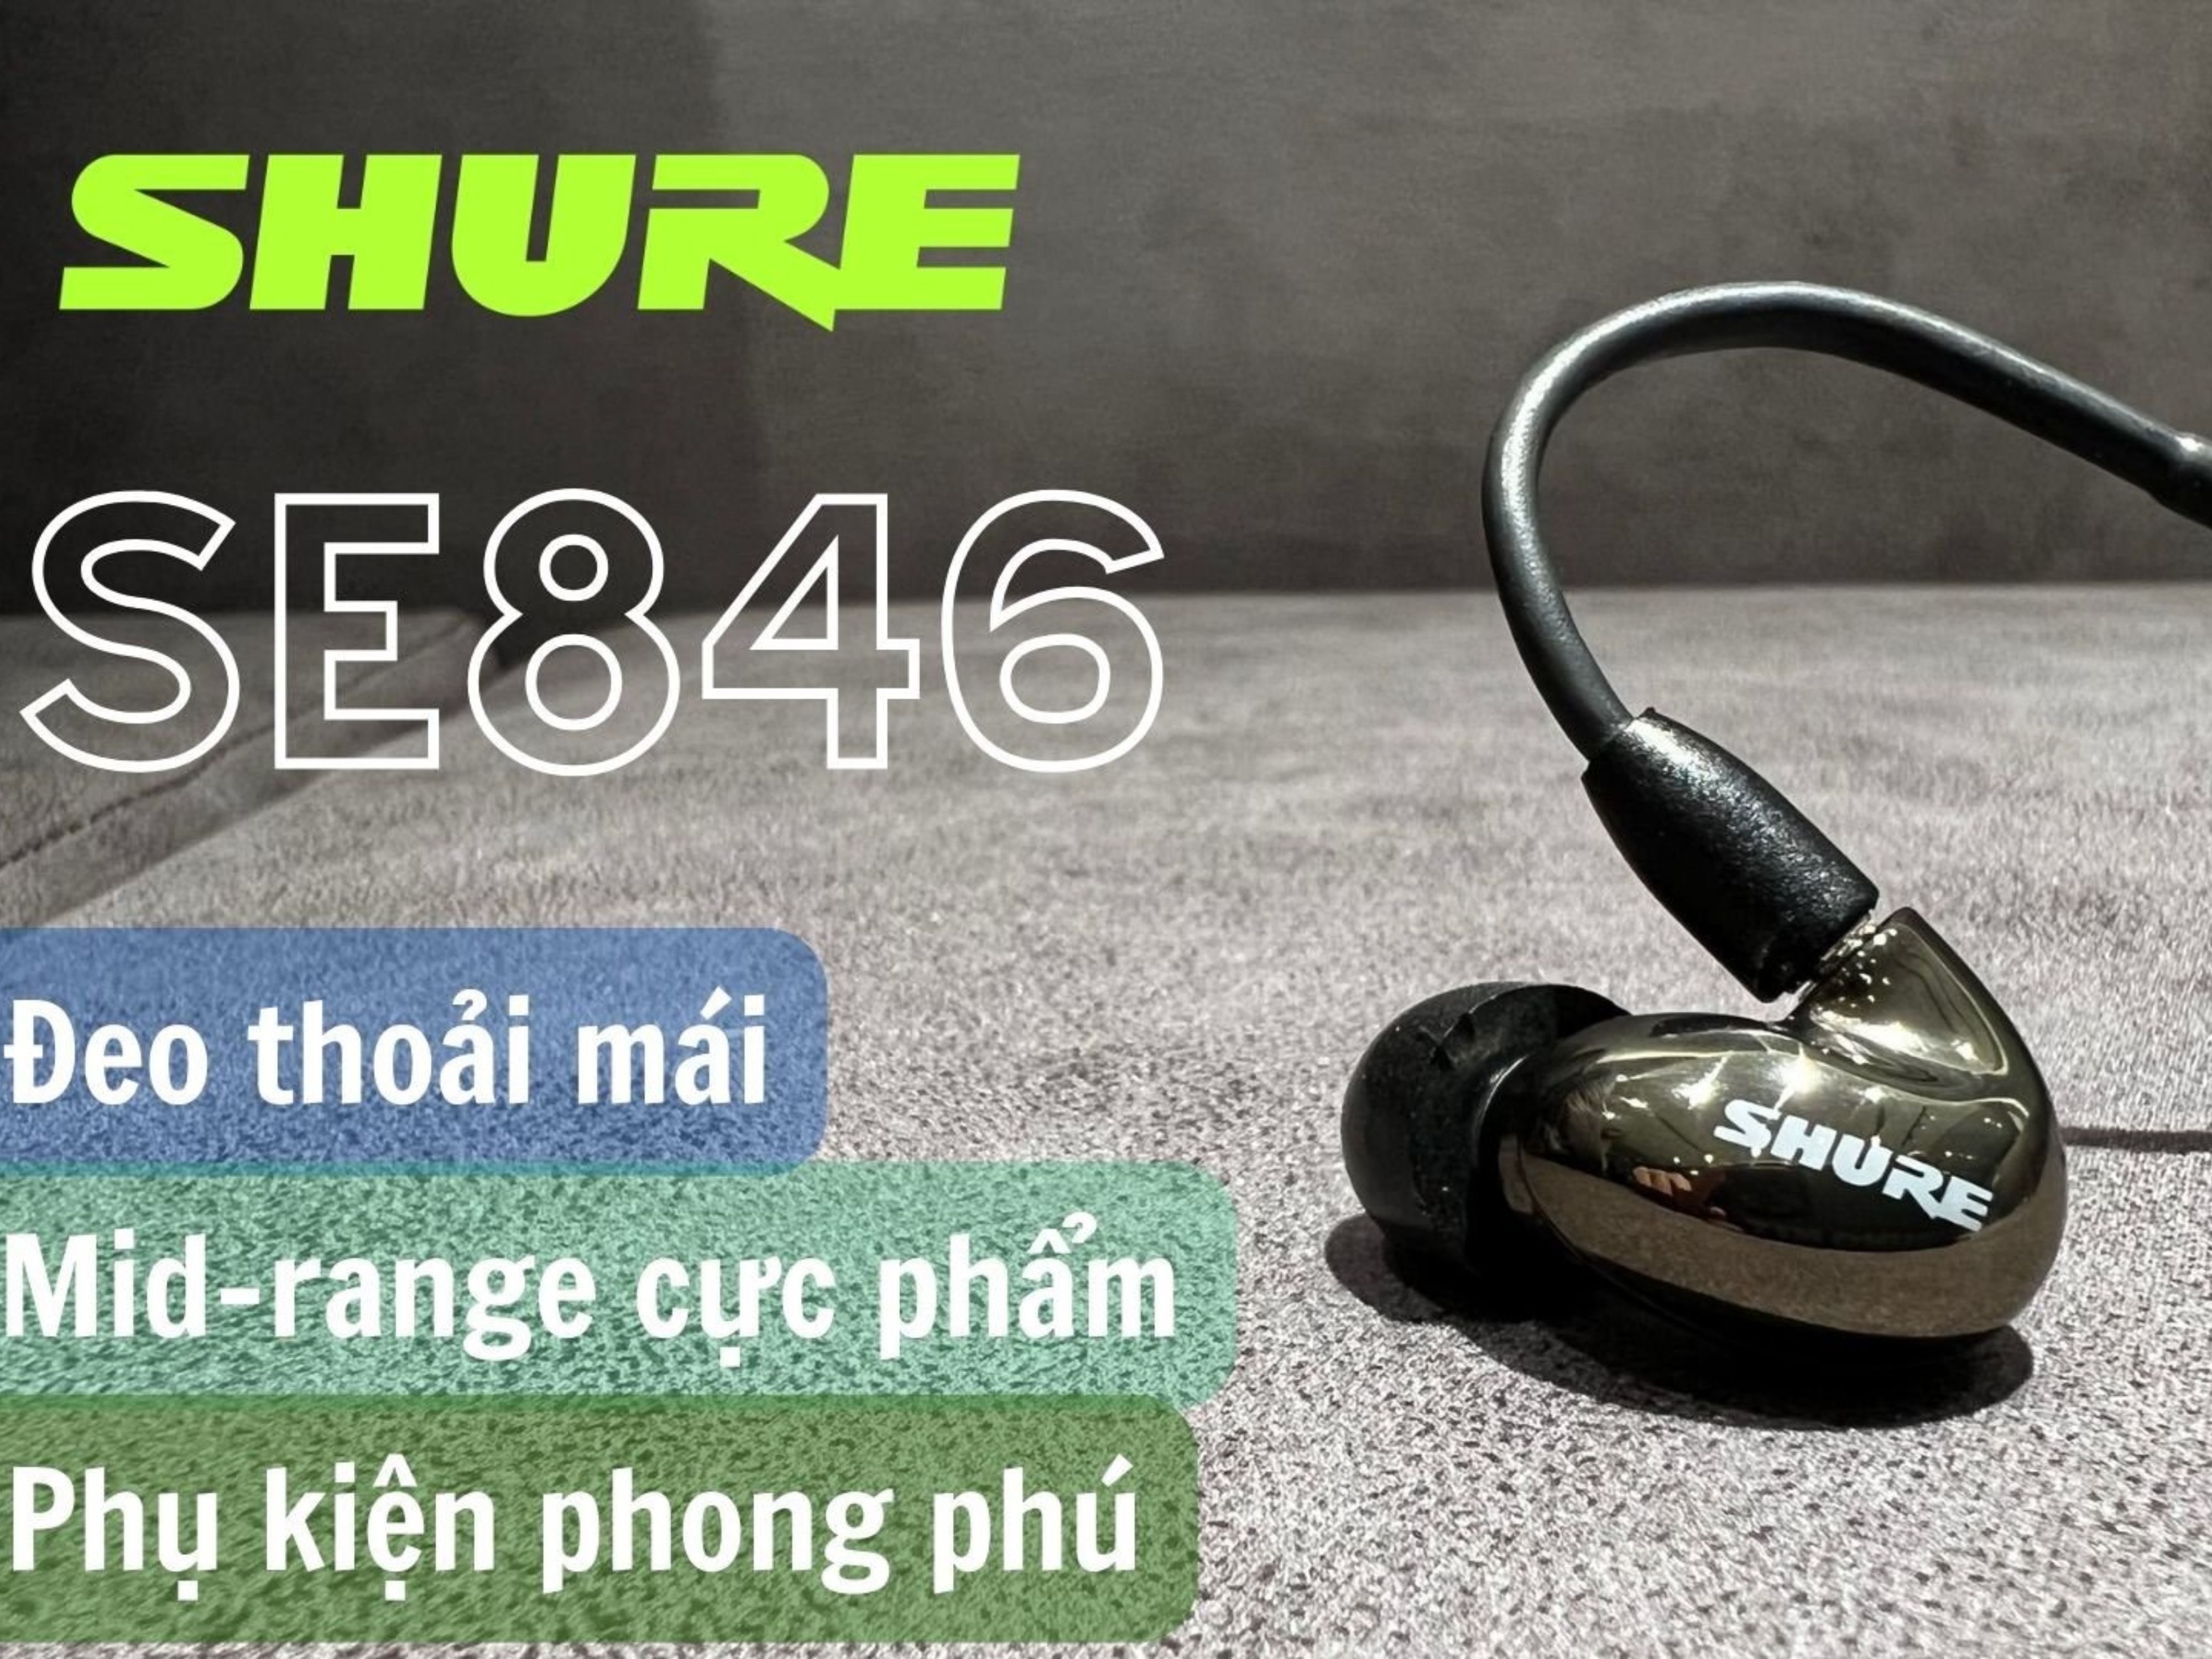 Đánh giá Shure SE846 - Vẫn là huyền thoại sau một thập kỷ